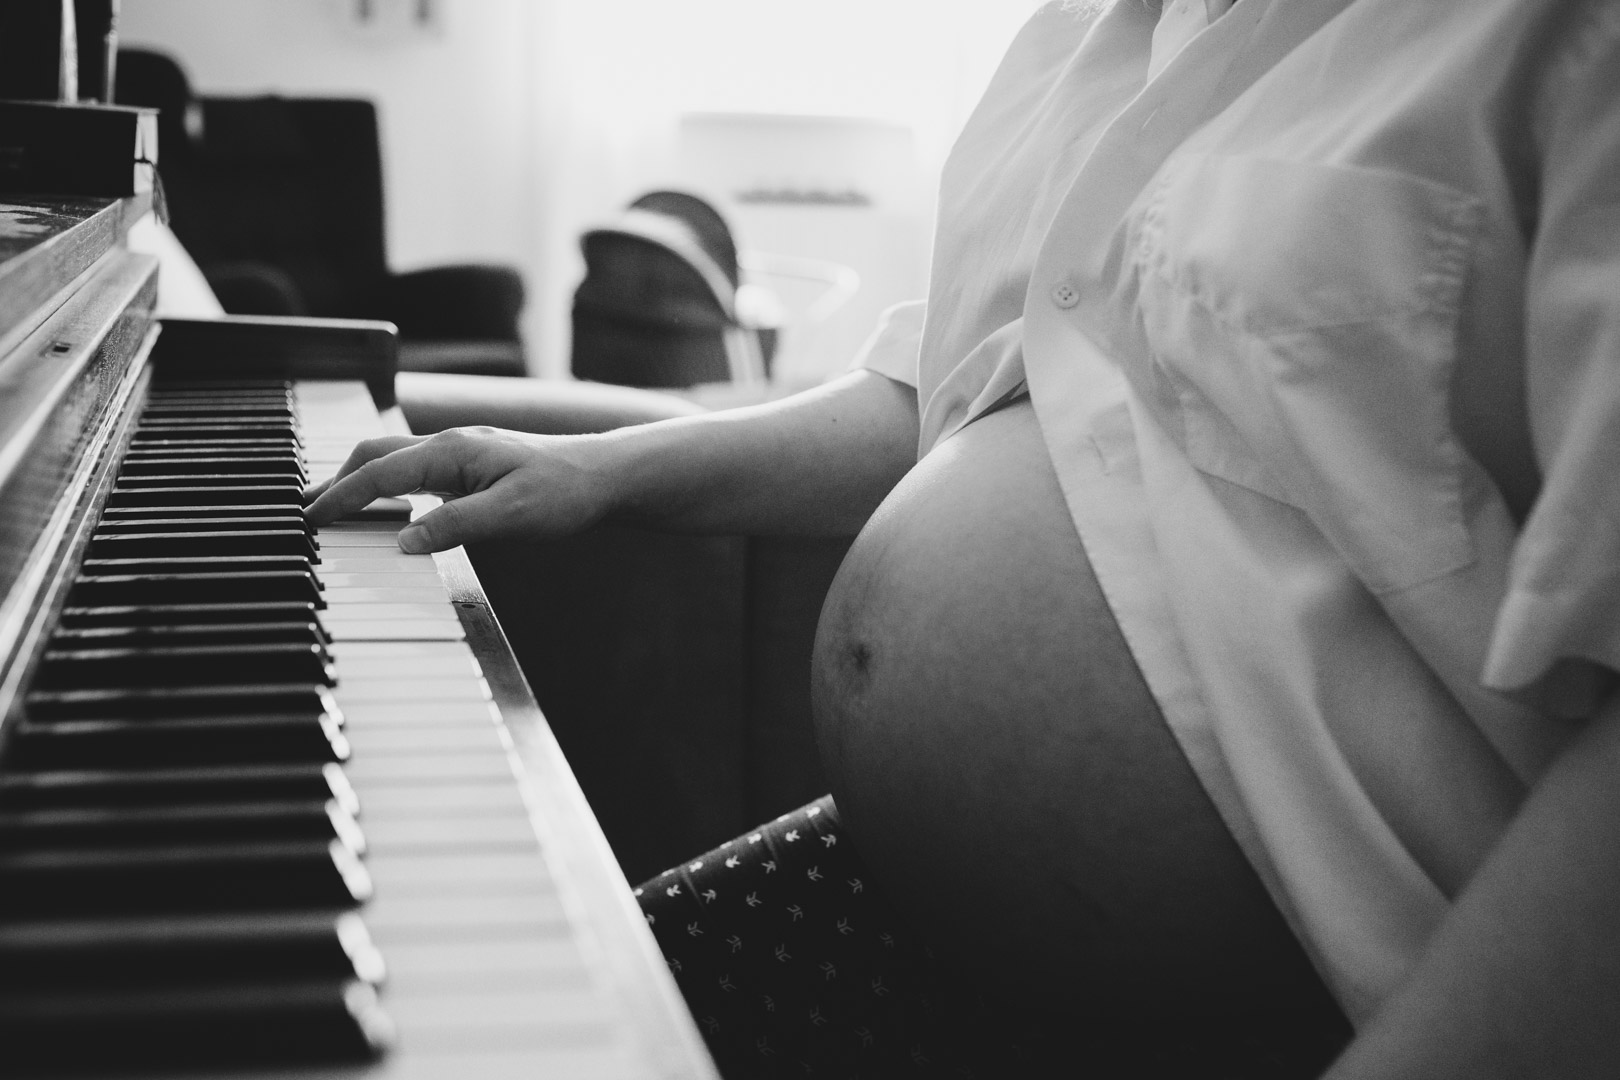 Familienfotograf Berlin Schwangerschaftsfotos: Schwarzweissfoto Babybauch an Klavier im Hintergrund steht ein Kinderwagen